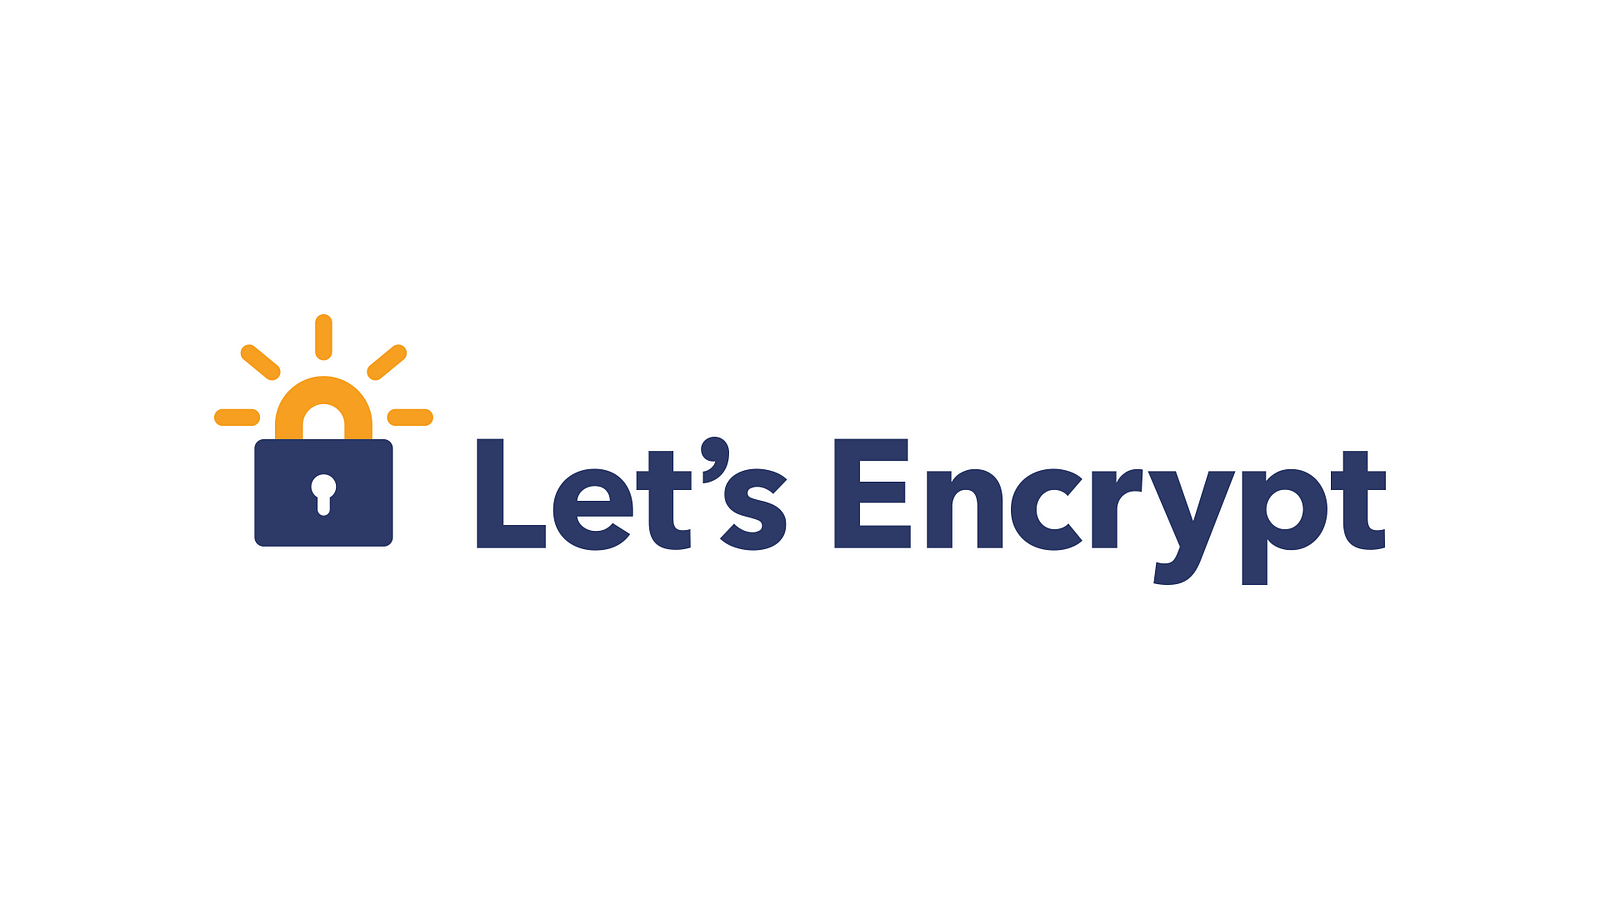 How to Setup Nginx with Let's Encrypt on Ubuntu 20.04